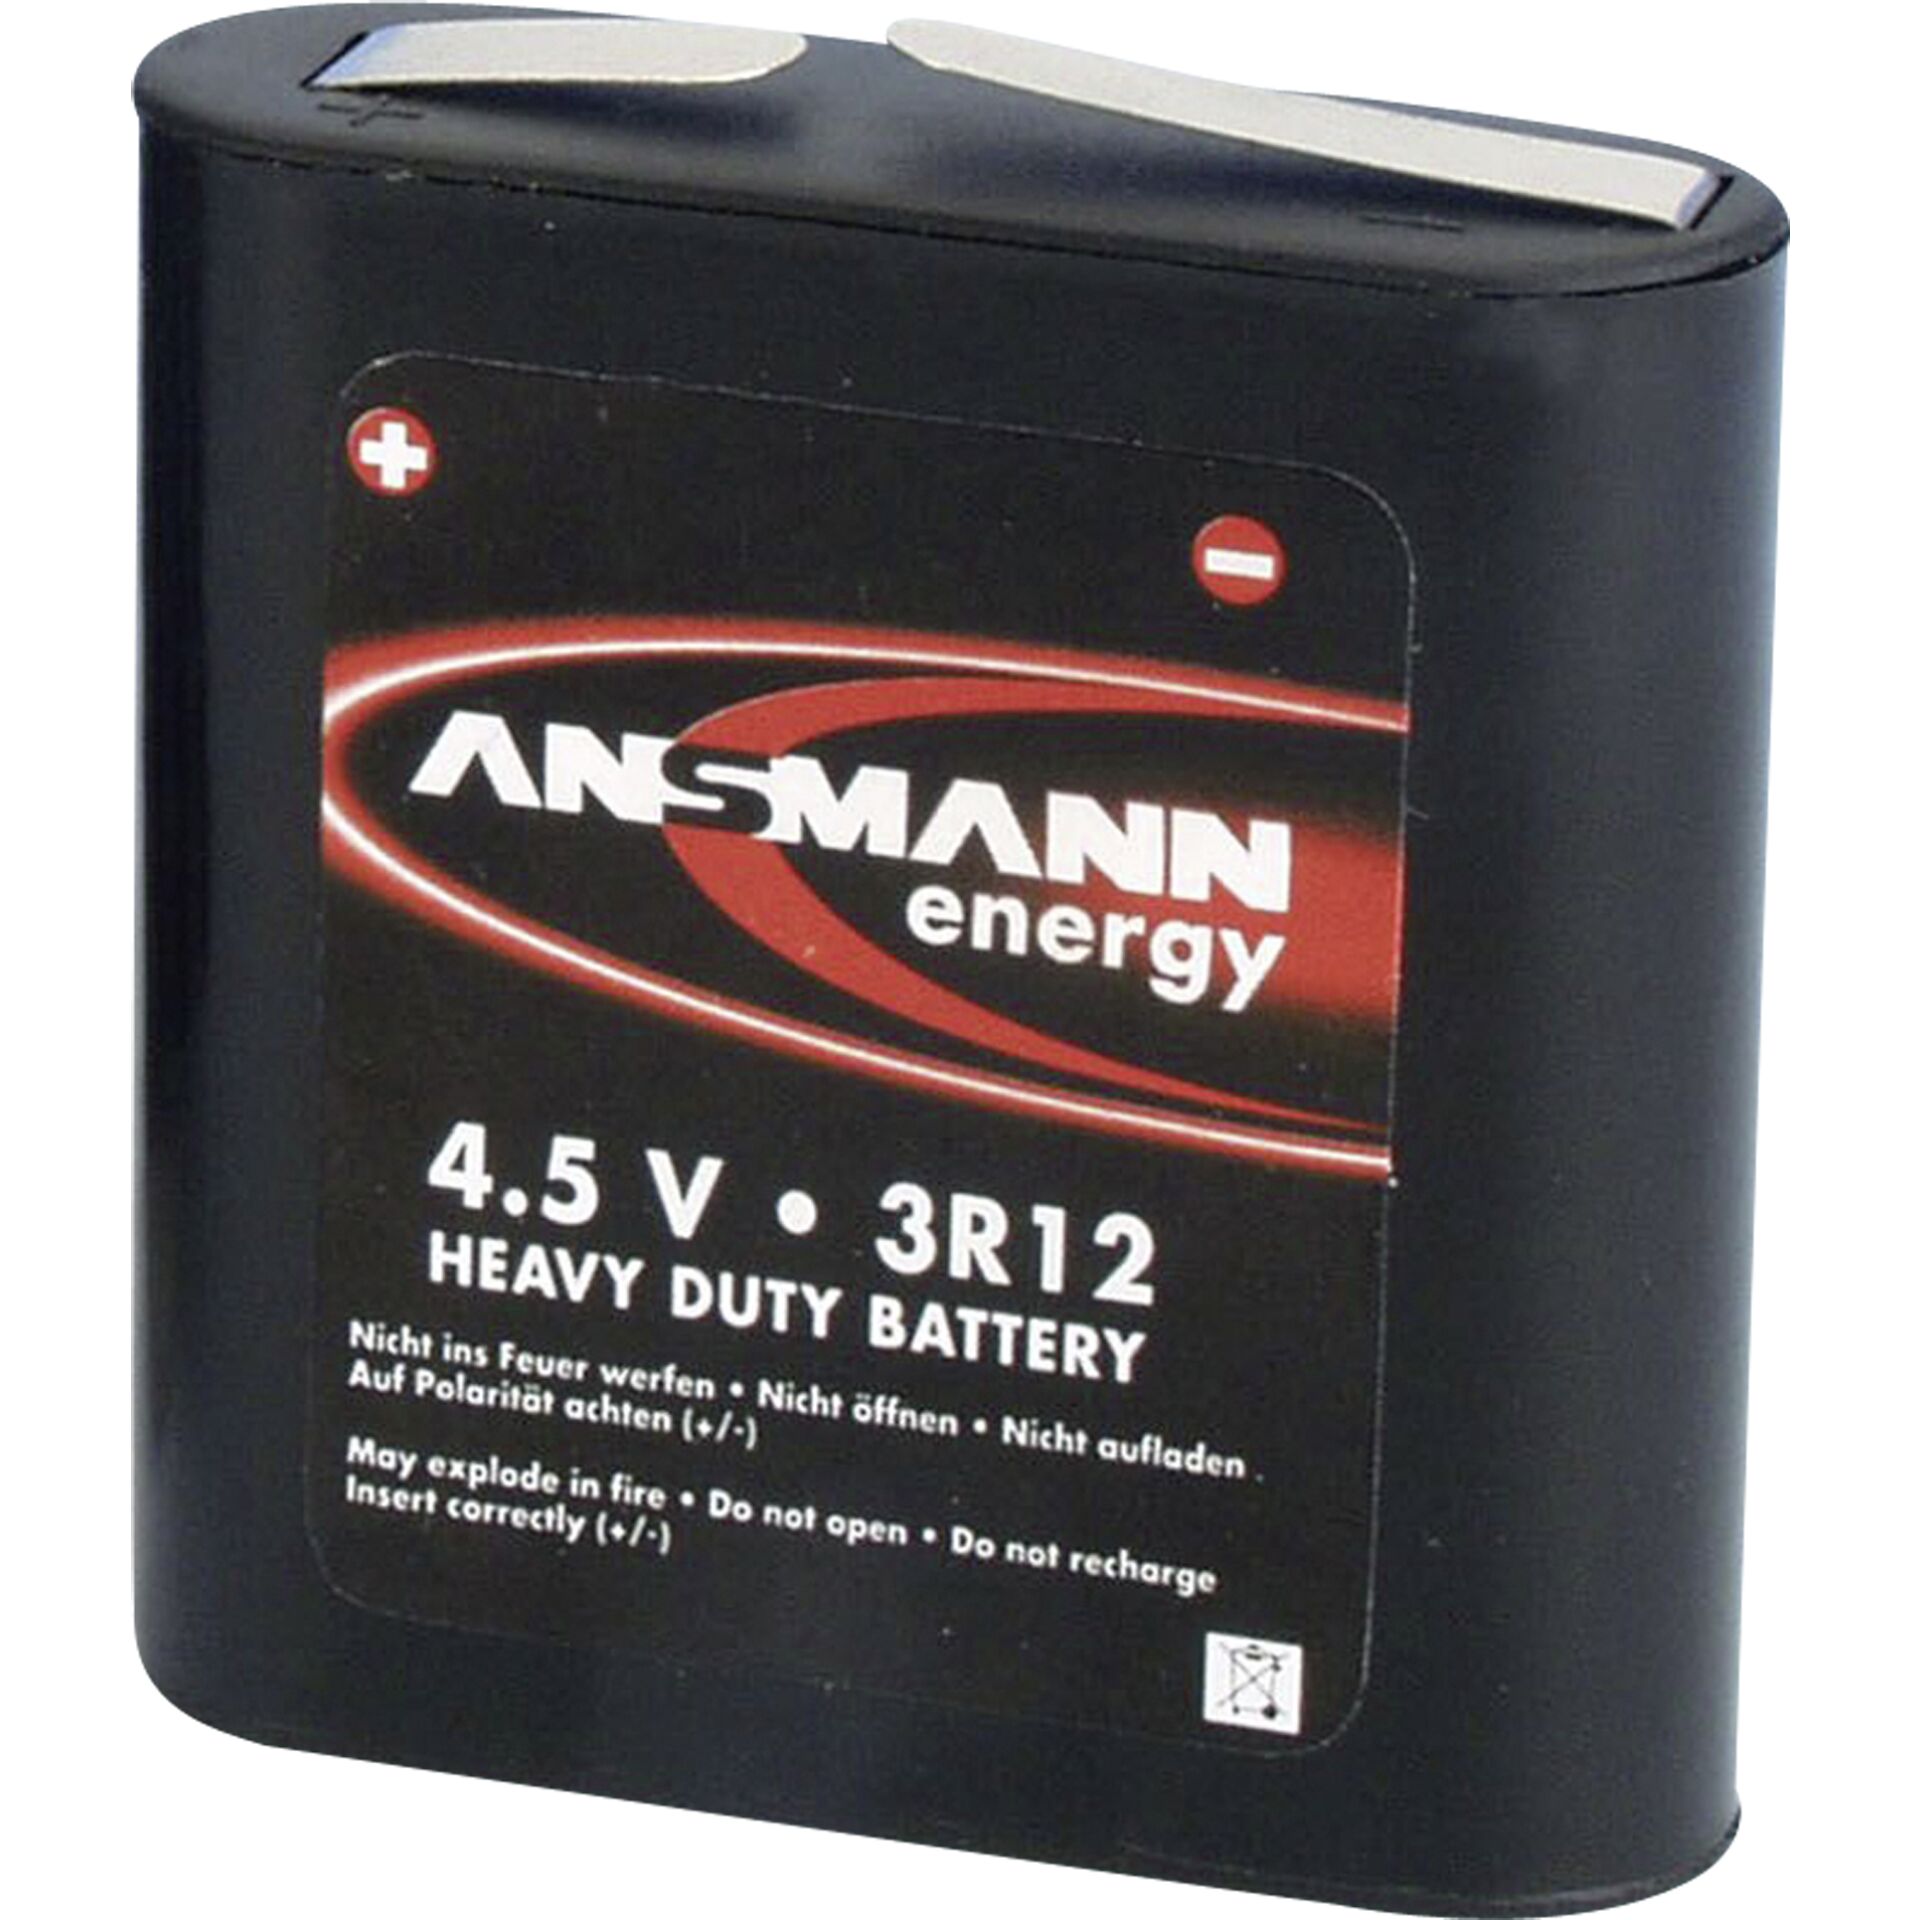 Ansmann 3R12 Flachbatterie 